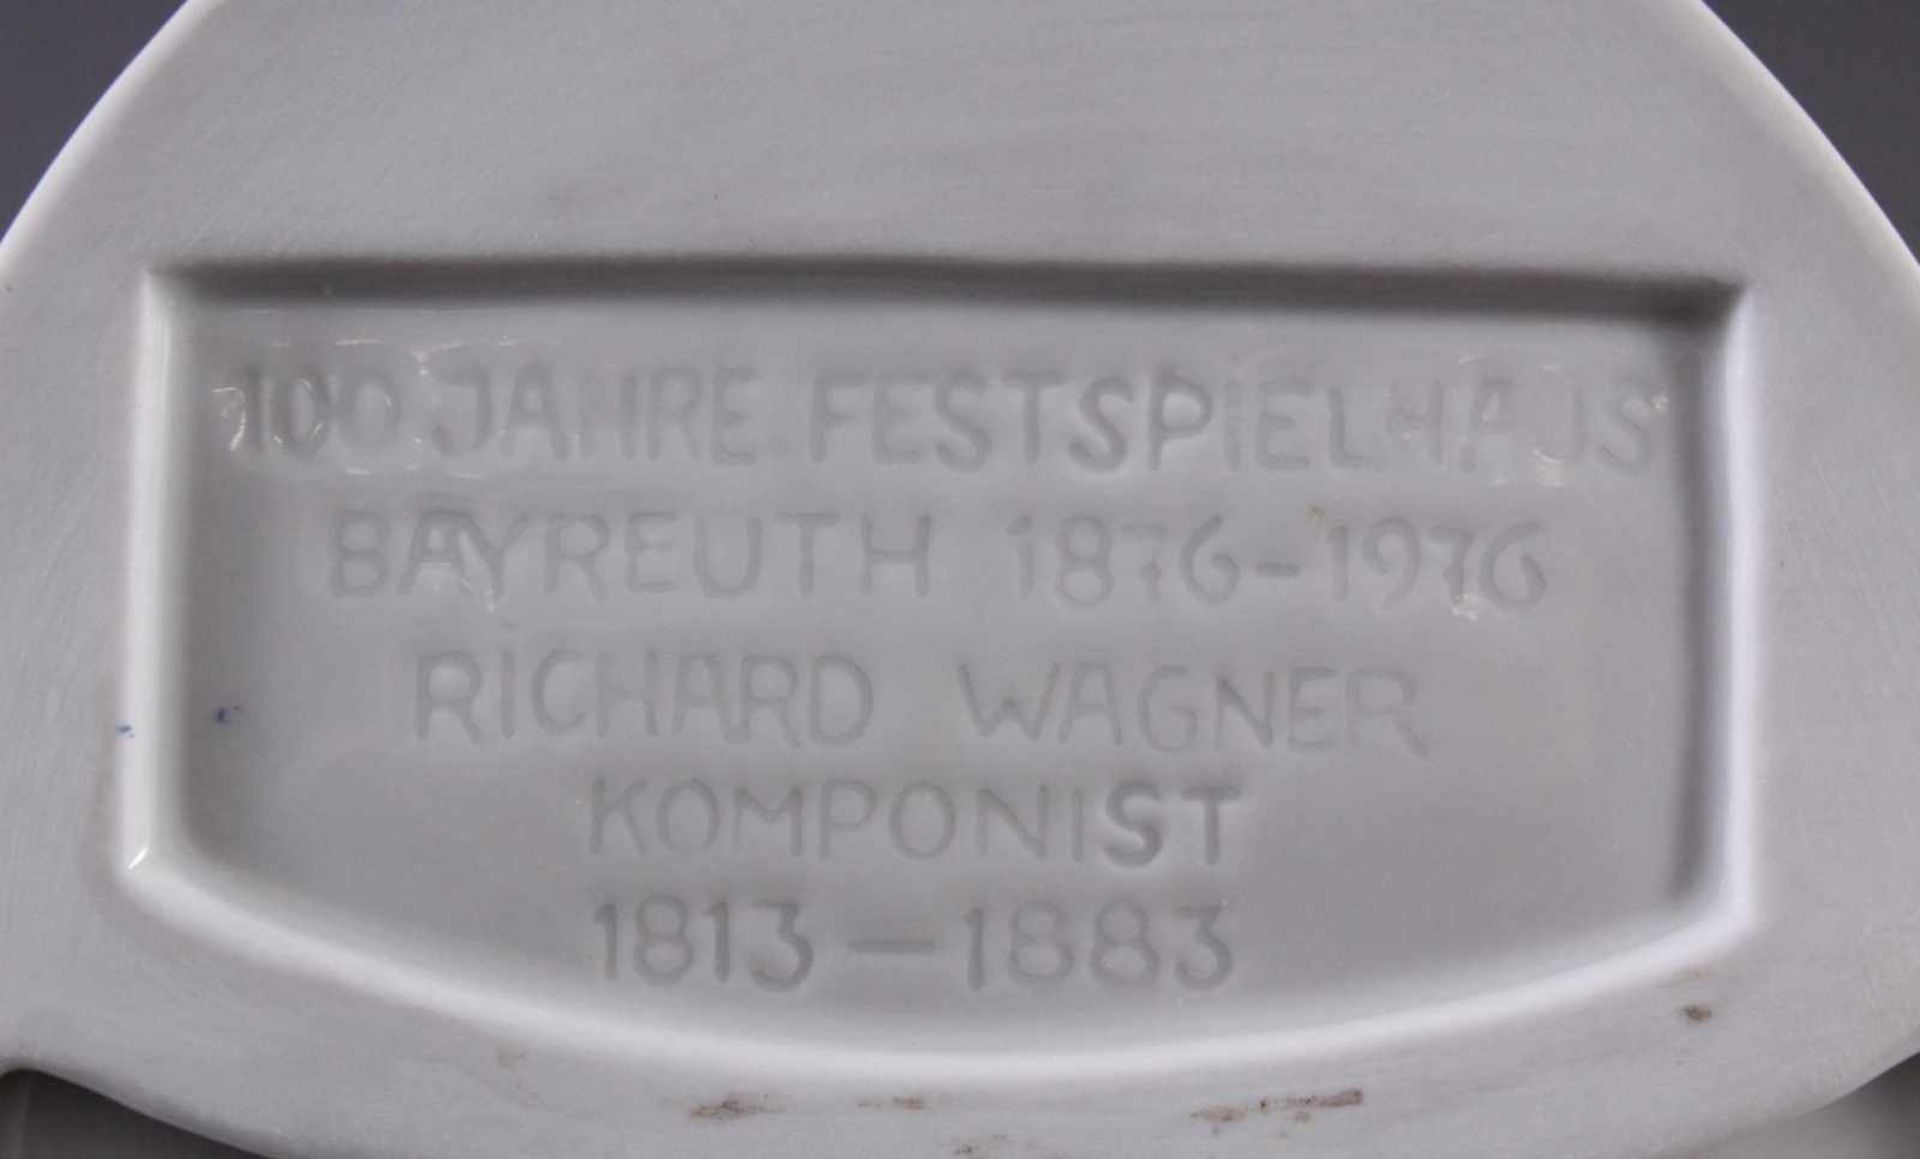 4 Porzellanplaketten "Wagner", HöchstWeißporzellan, auf der Rückseite betitelt: 100 Jahre - Image 4 of 4